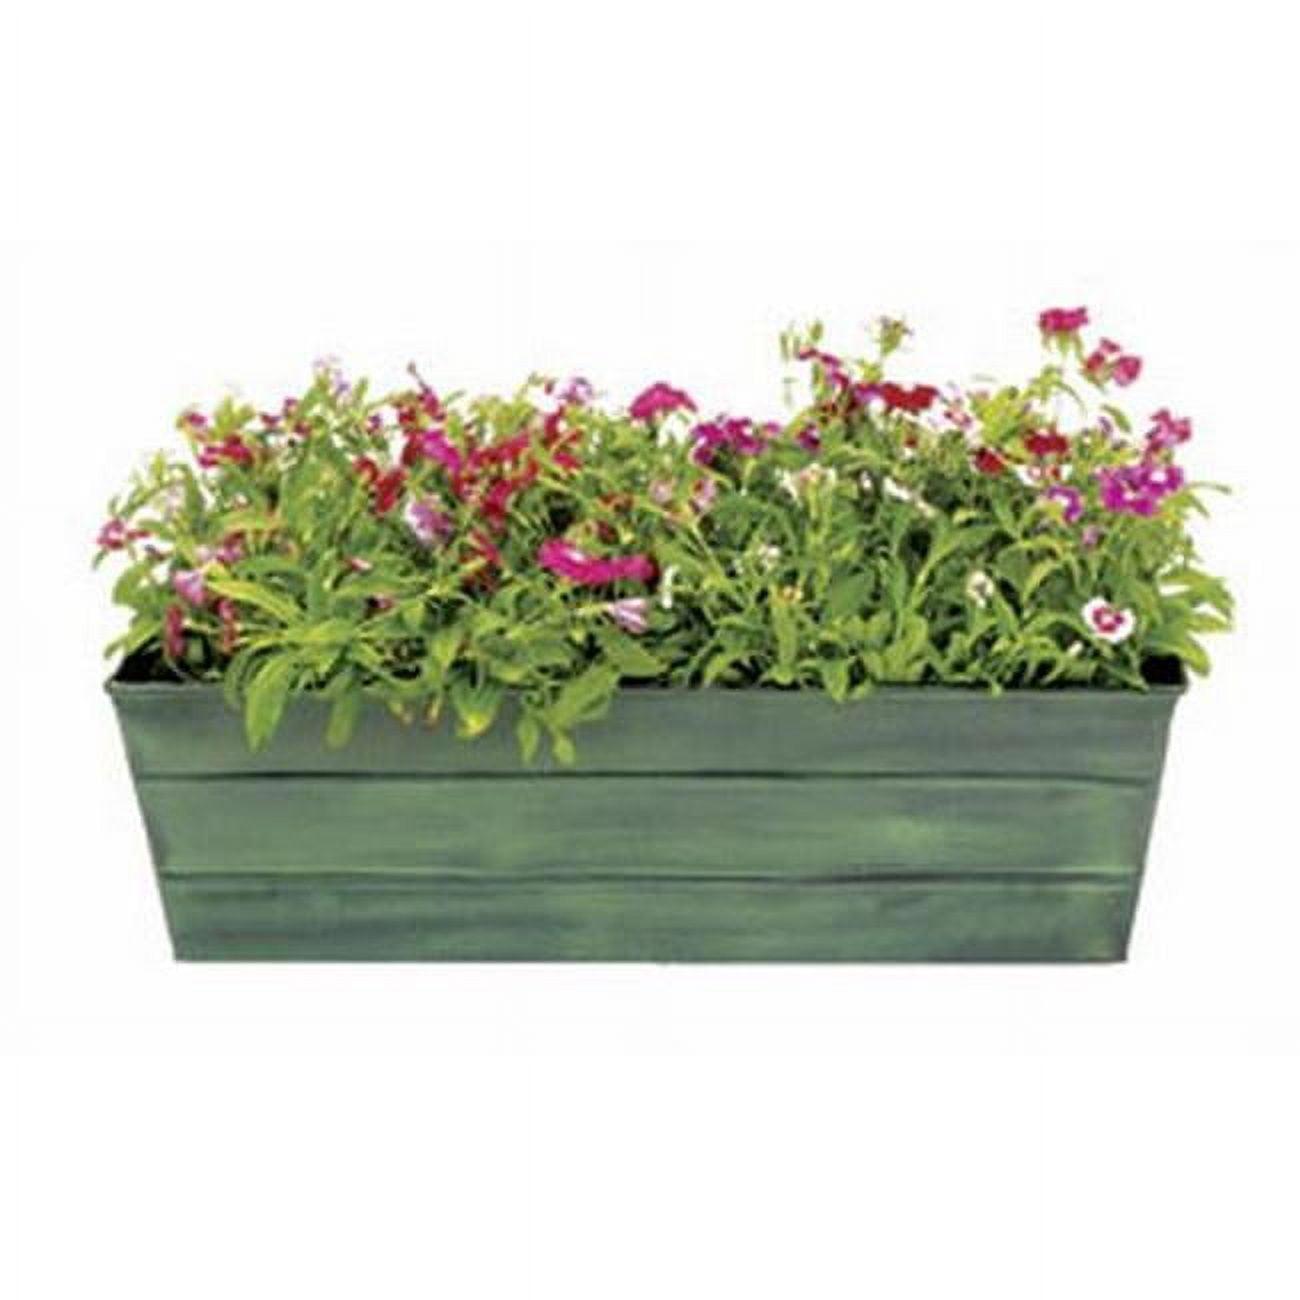 Medium Green Galvanized Steel Outdoor Flower Box